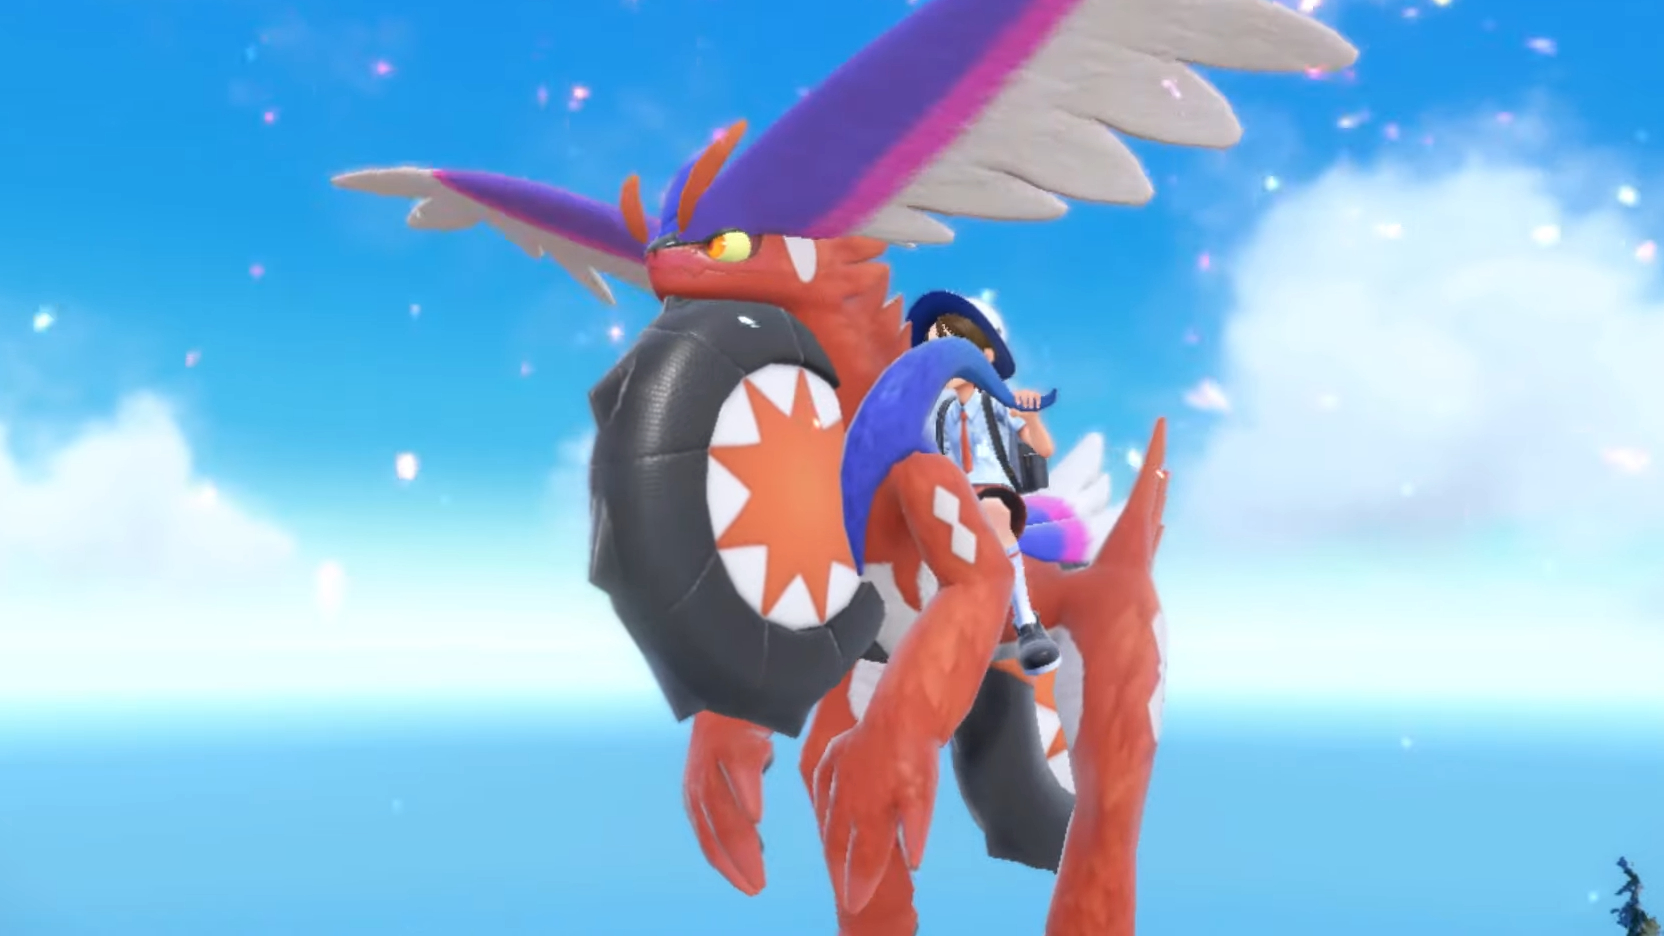 Legendary Pokémon — Pokémon Scarlet and Pokémon Violet